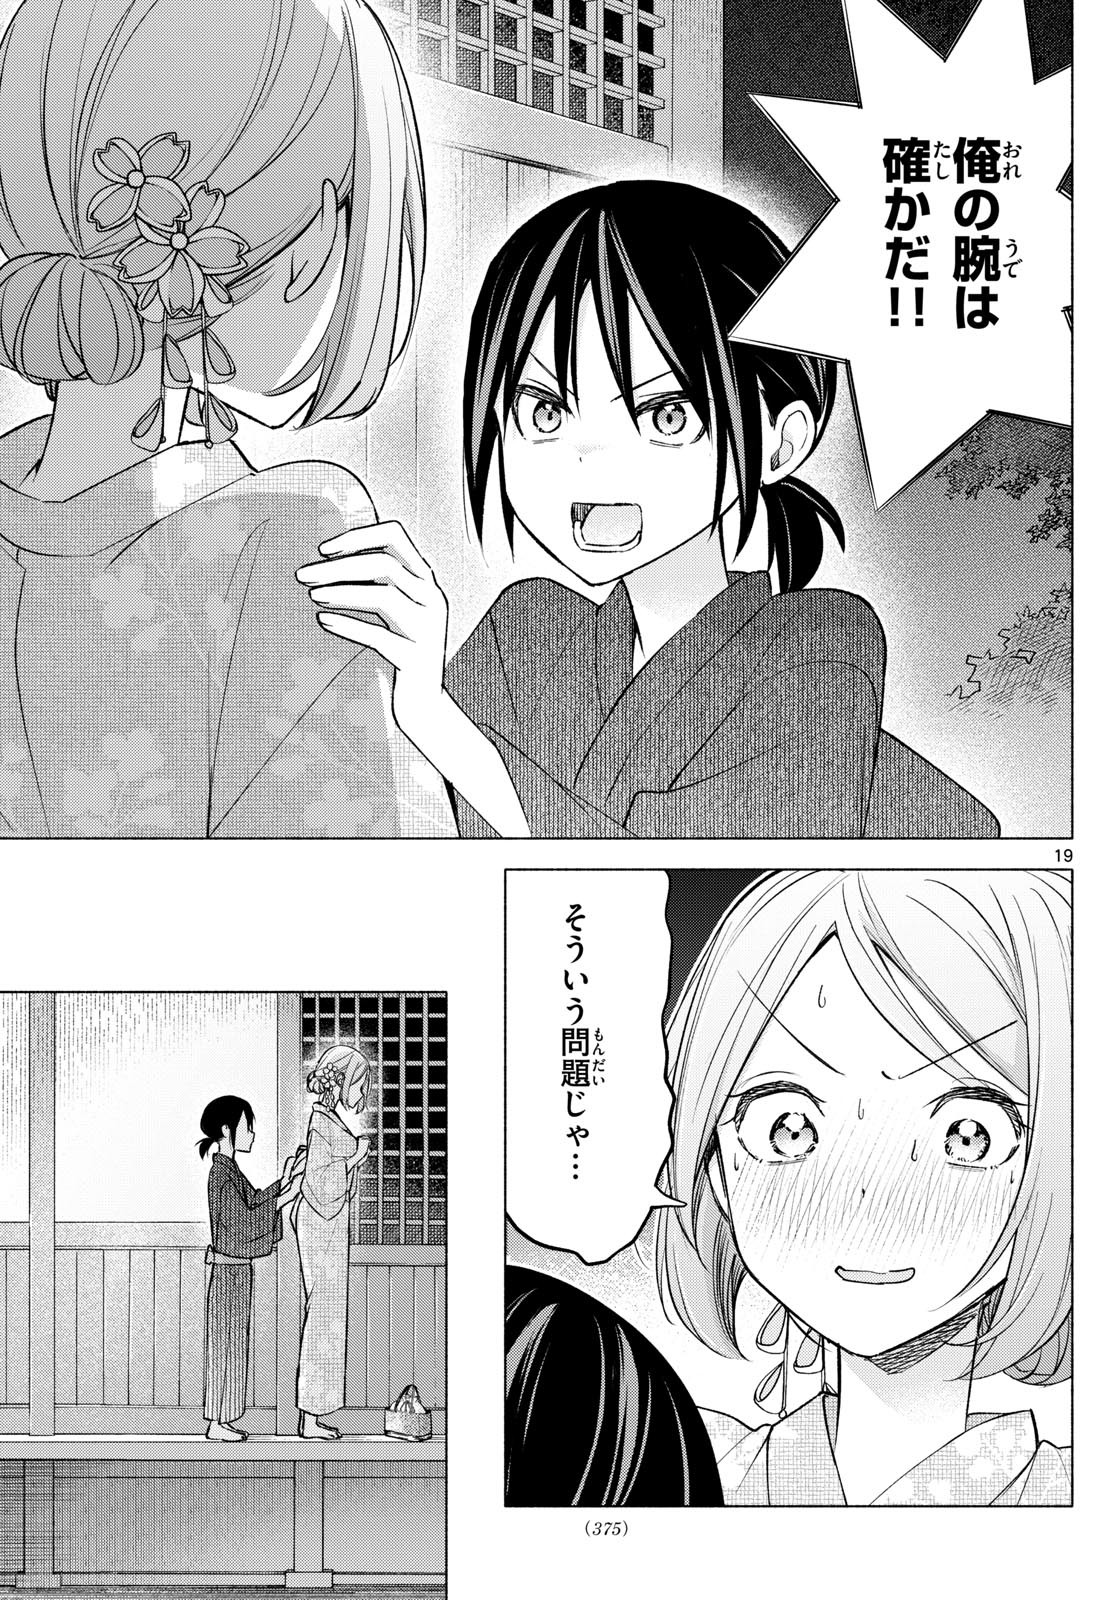 Kimi to Warui Koto ga Shitai - Chapter 047 - Page 19